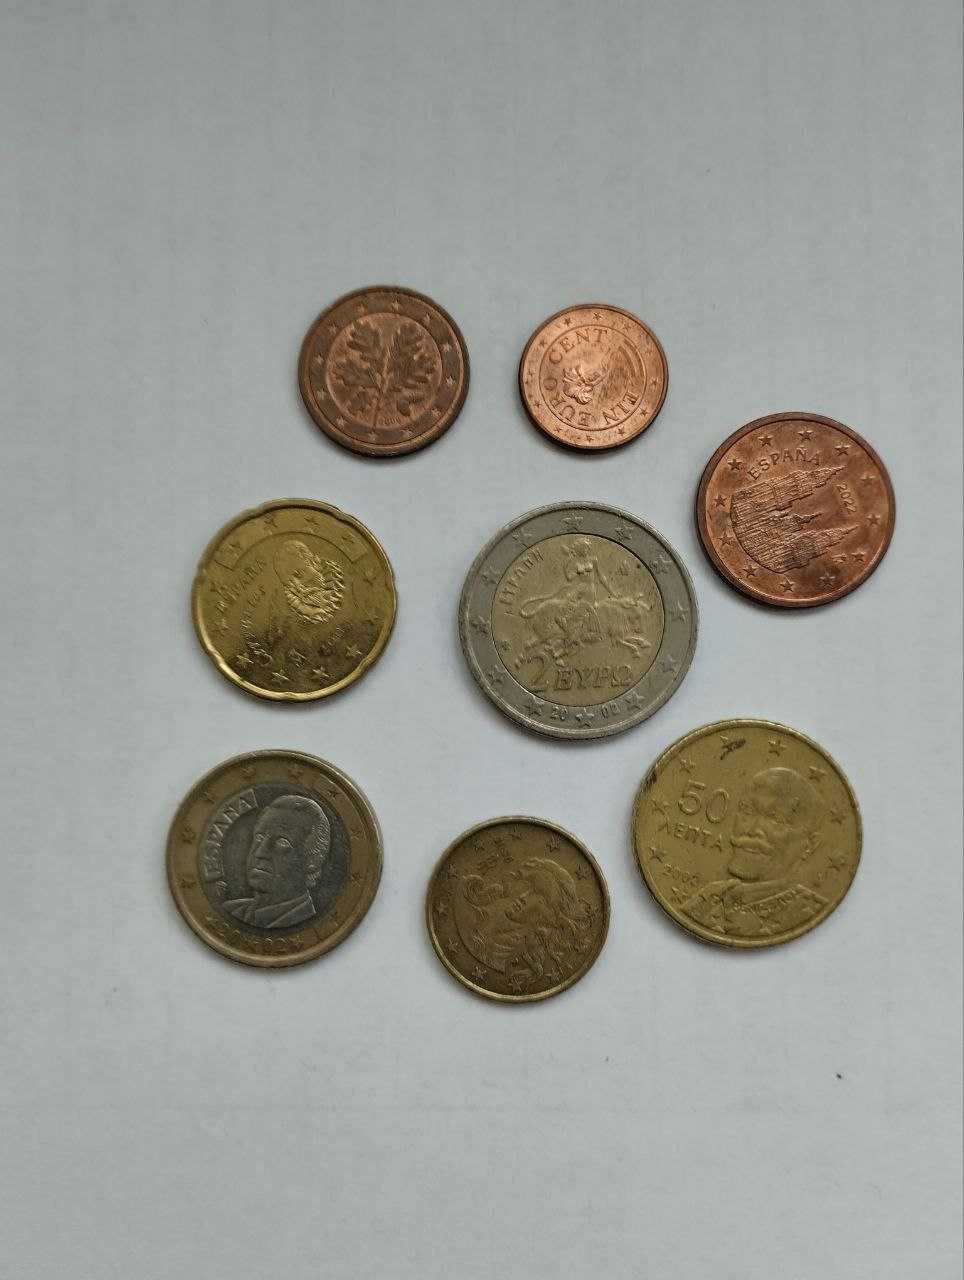 Євро монети, євро центи, обіходні, обмін